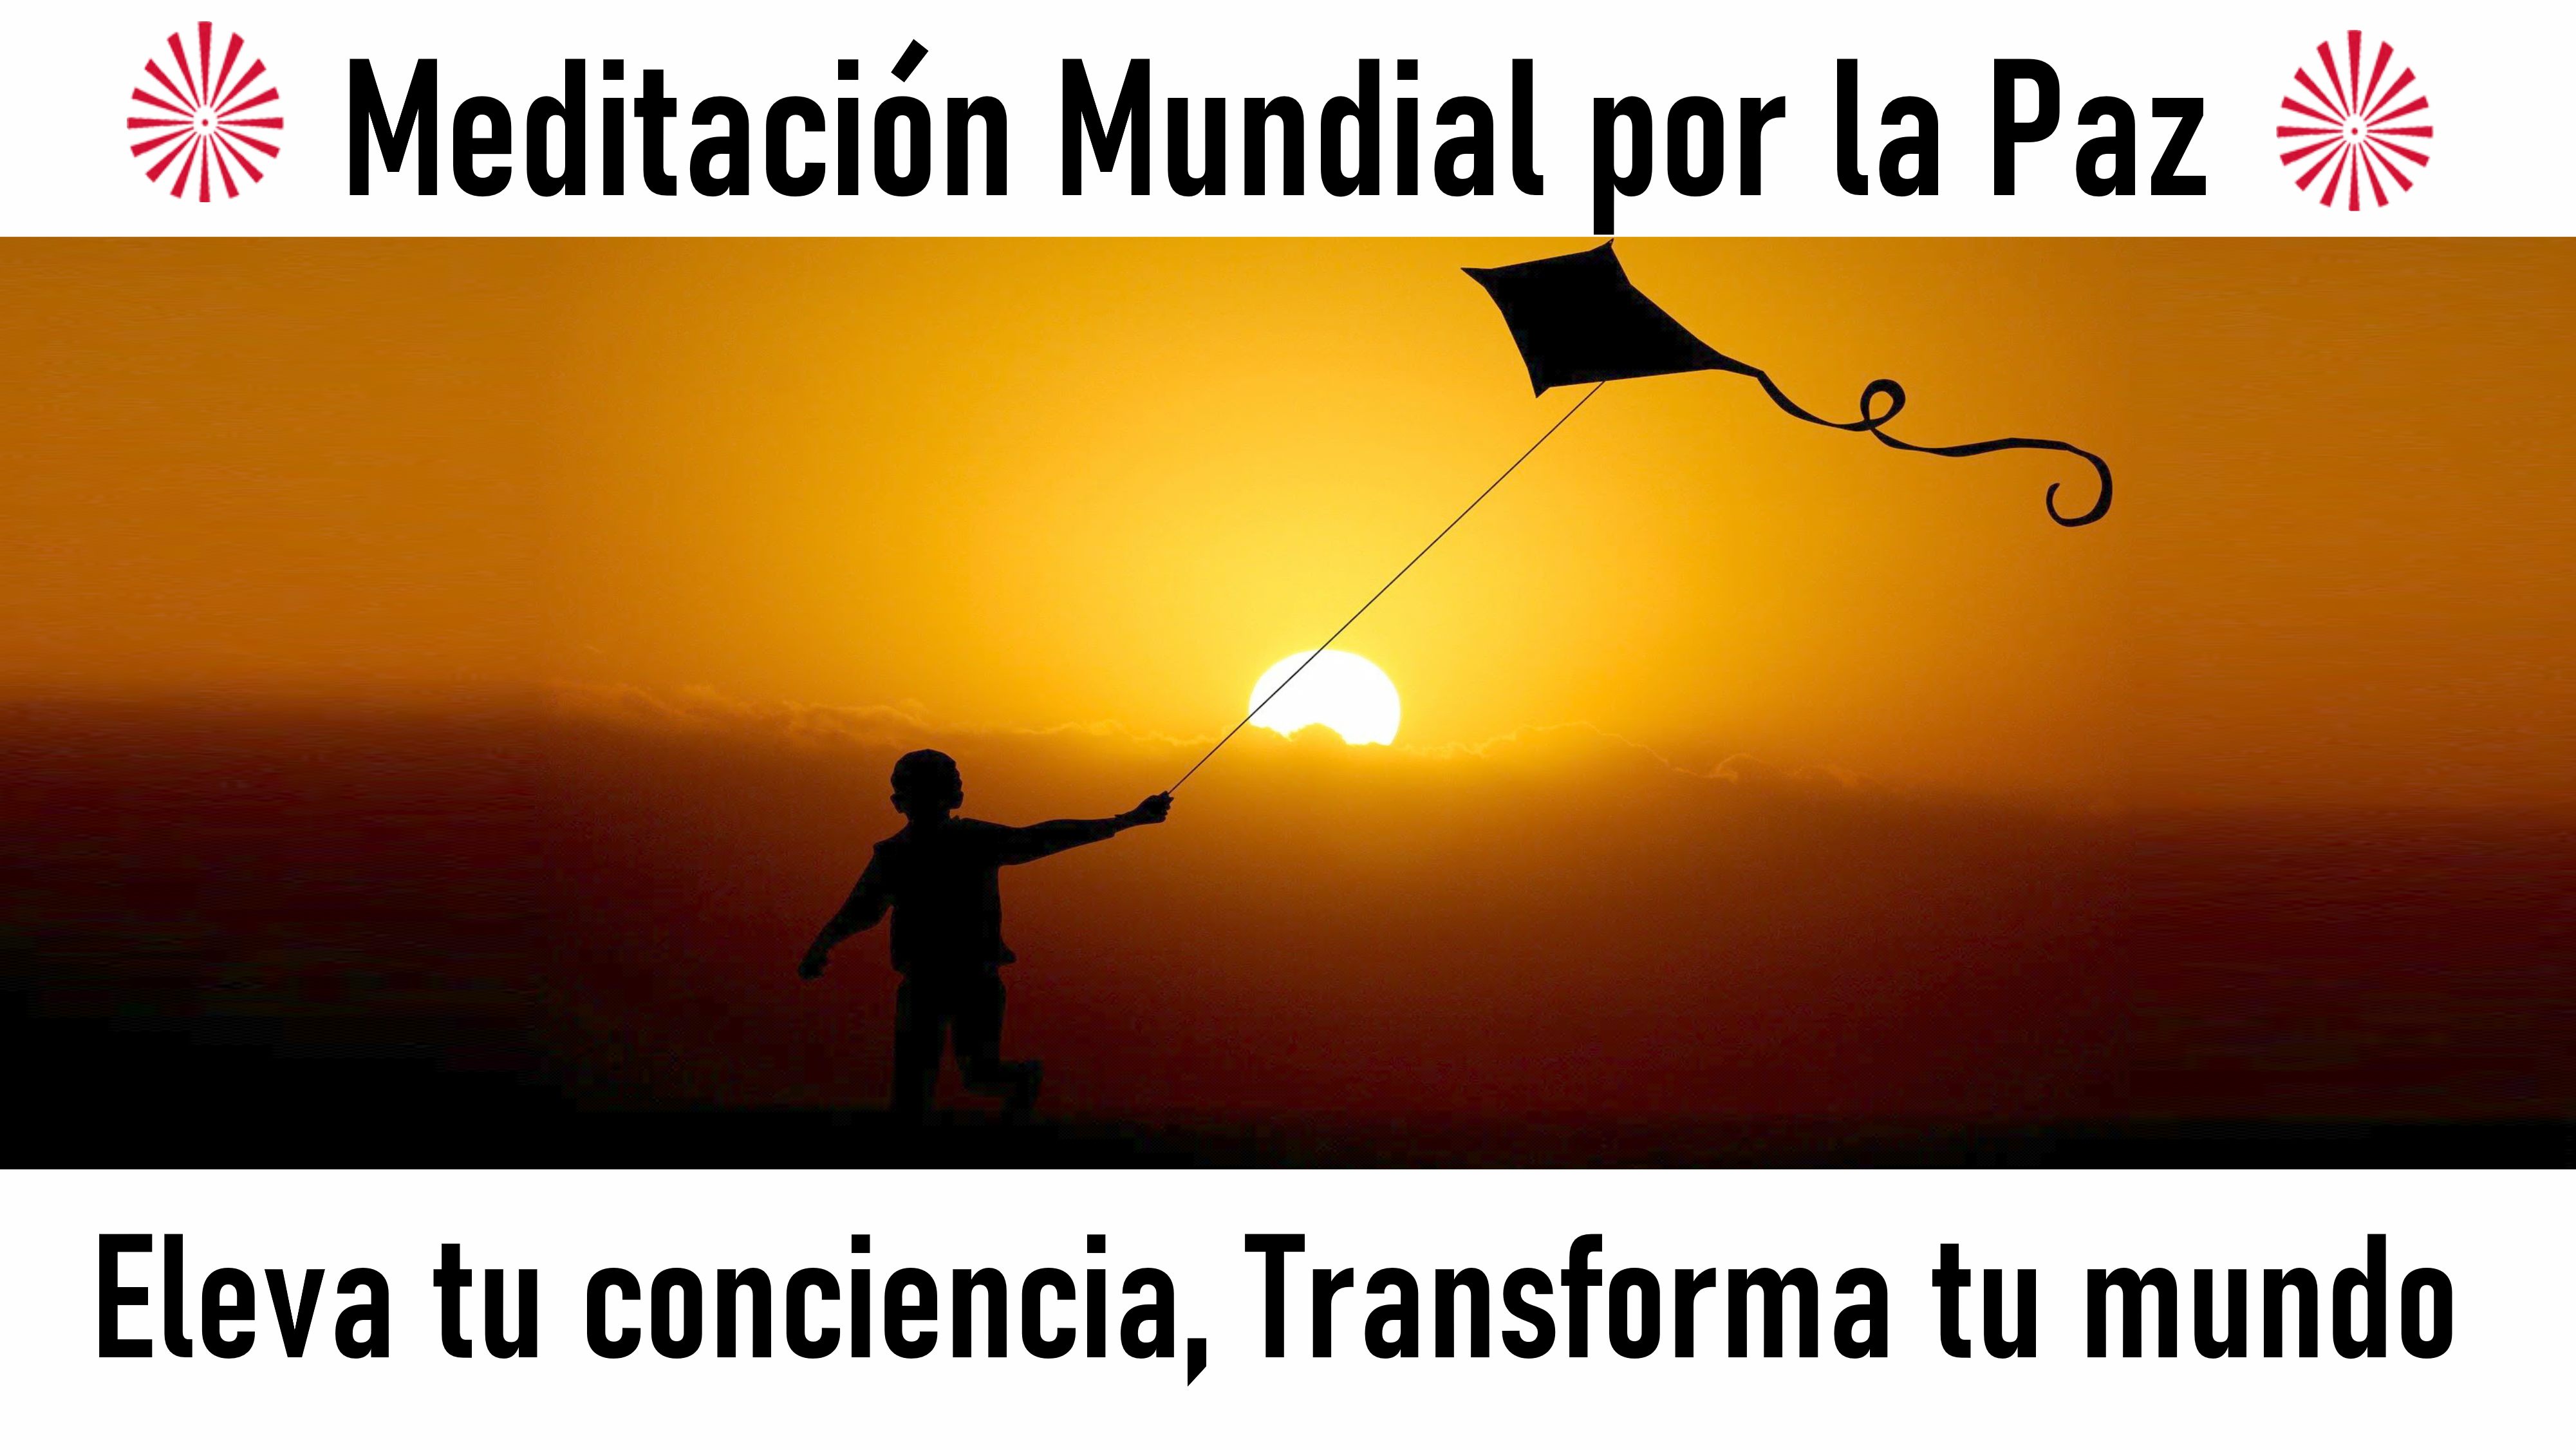 Meditación mundial por la Paz: Eleva tu conciencia, Transforma tu mundo (19 Julio 2020) On-line desde Valencia